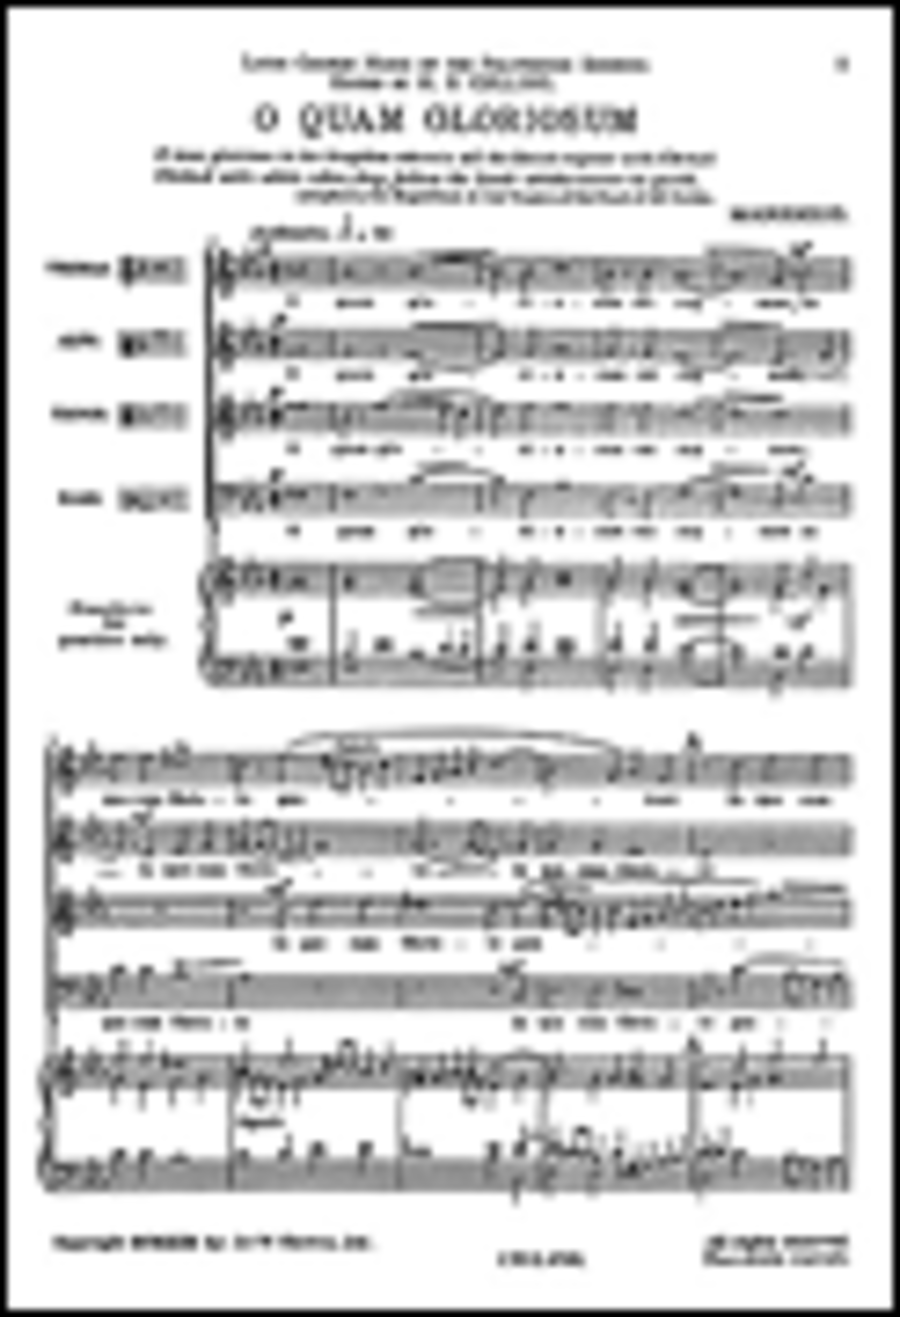 Marenzio: O Quam Gloriosum for SATB Chorus